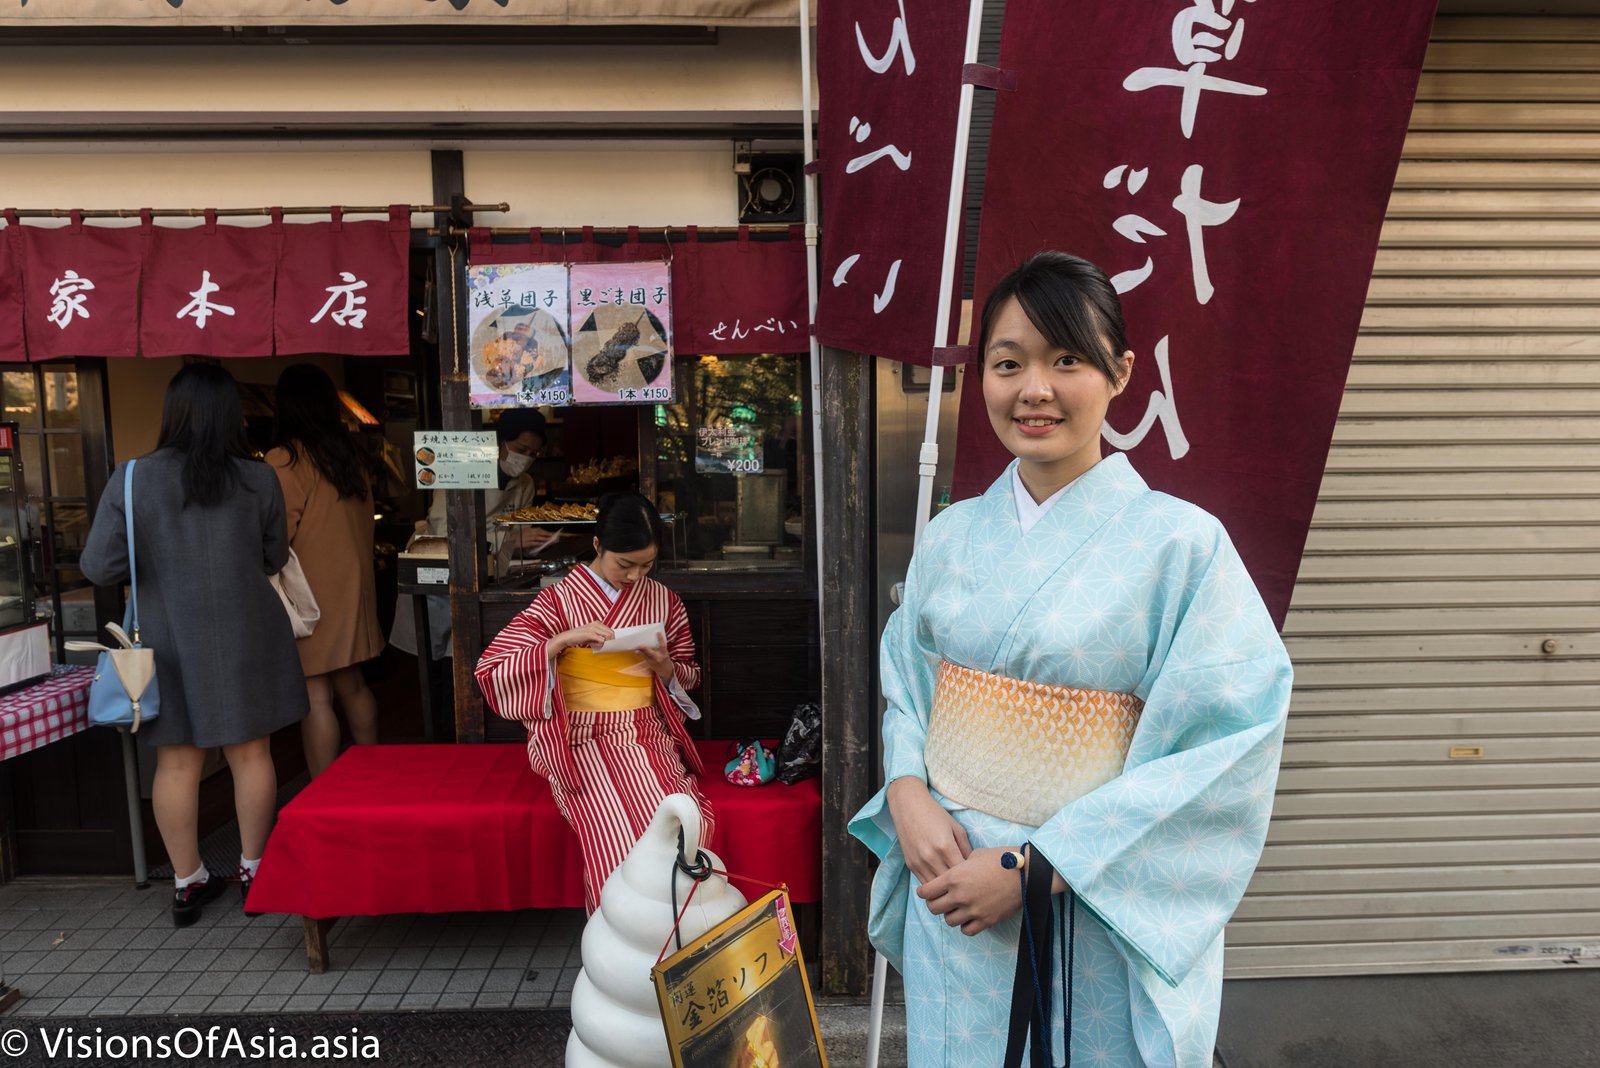 HK tourist in kimono